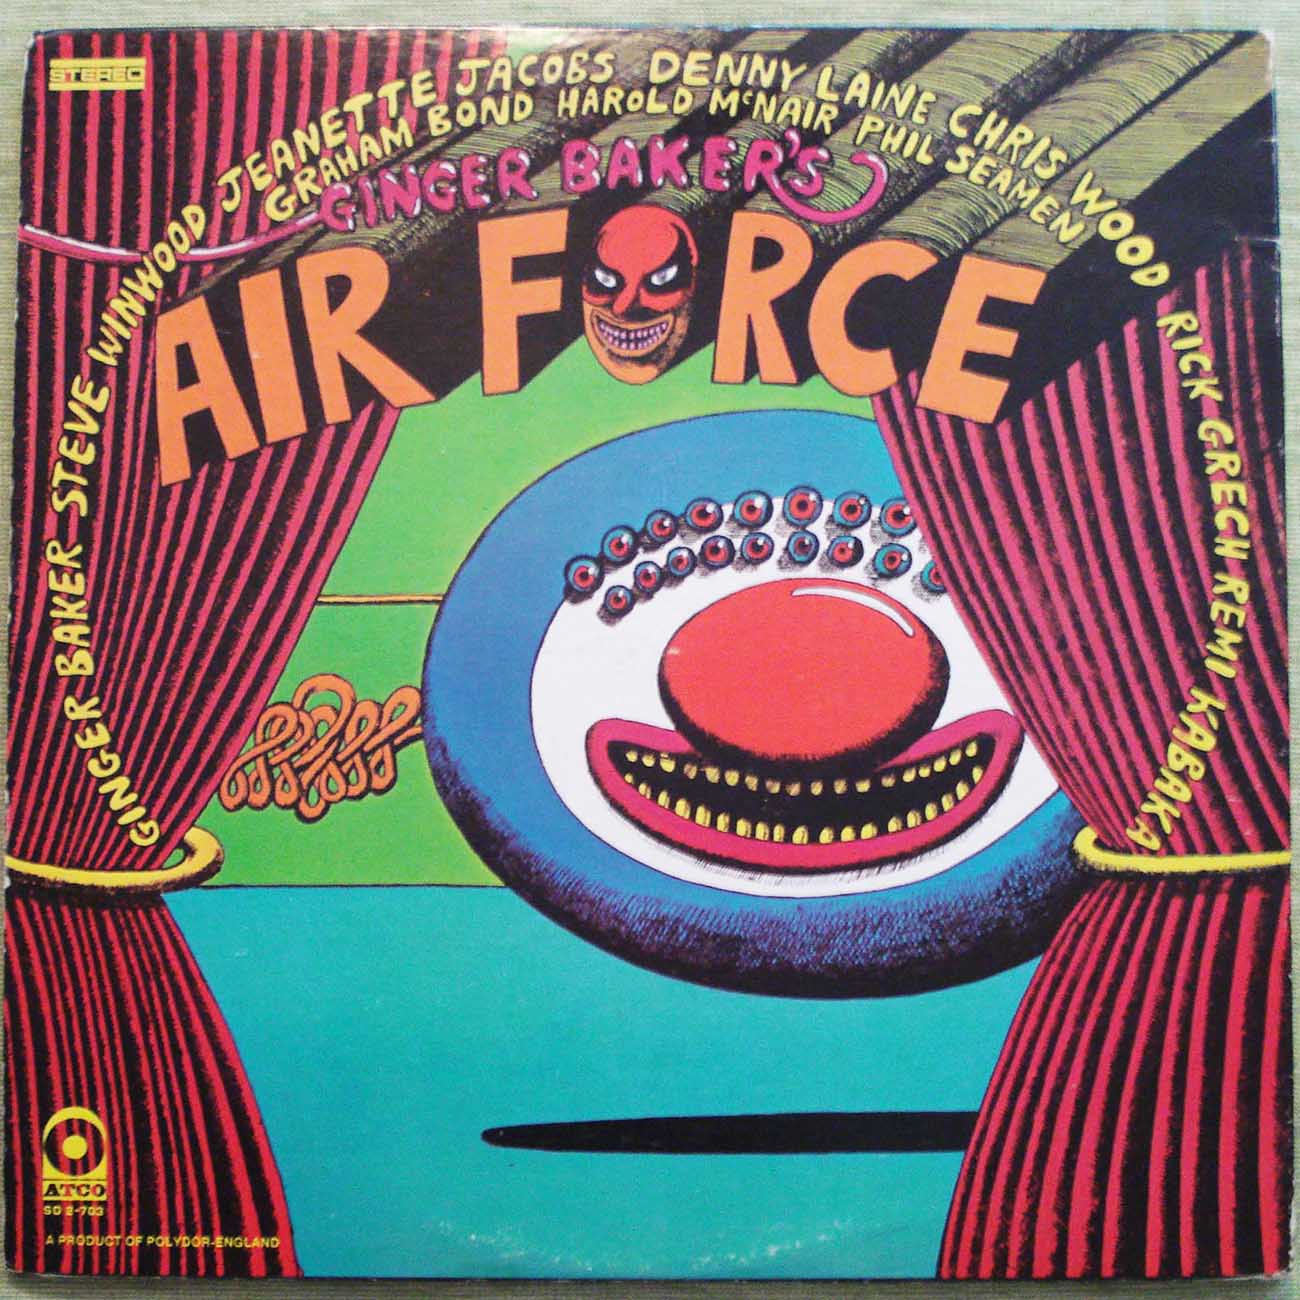 Ginger Baker's Air Force - Self Titled Album (1970) Vinyl LP 33rpm SD2-703